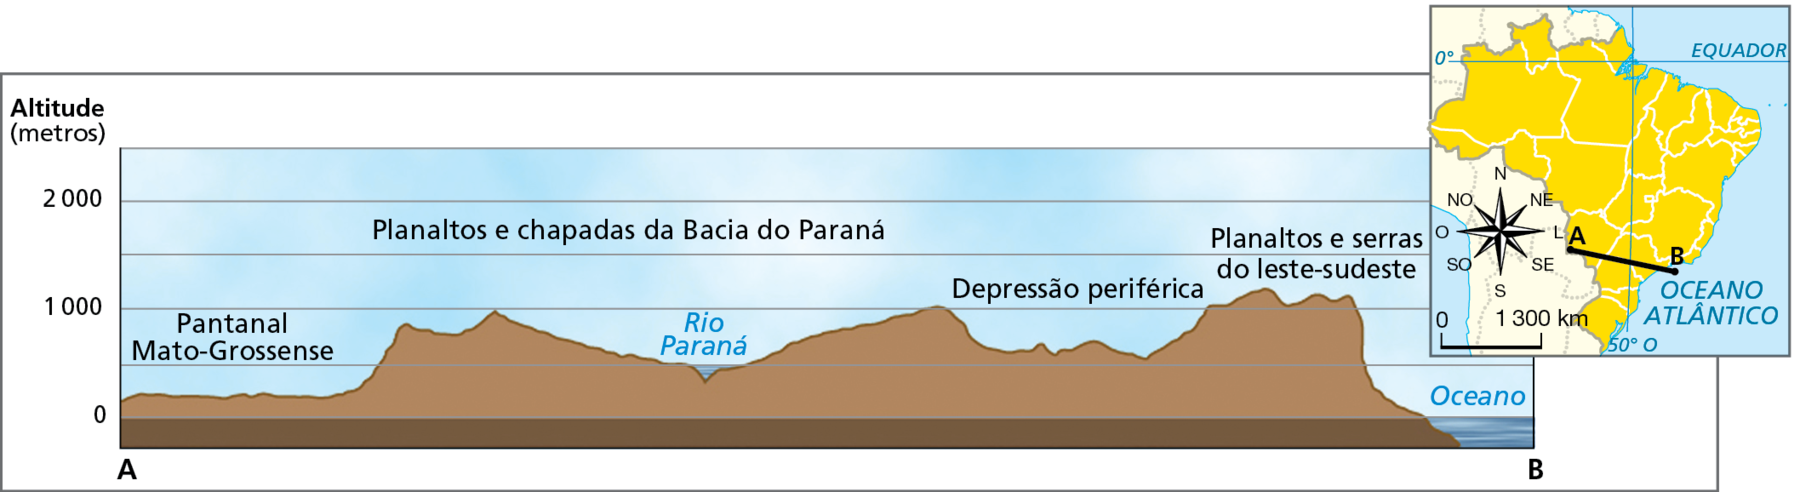 Gráfico. Brasil: perfil do relevo com depressão relativa.
Gráfico representando um perfil topográfico de uma depressão relativa. À direita do gráfico, mapa reduzido do Brasil com a marcação da linha de corte do perfil, traçada entre o ponto A, localizado na porção oeste do Mato Grosso do Sul, e o ponto B, localizado na faixa oceânica próxima ao litoral do estão de São Paulo. A linha do perfil está posicionada na direção de oeste-noroeste a leste-sudeste. No perfil traçado no gráfico, a distância entre os pontos A e B representa o eixo horizontal; o eixo vertical indica os intervalos das cotas de altitude em metros: 0 (nível do mar), 1.000 e 2.000. O ponto A se encontra a aproximadamente 300 metros de altitude, sob o Pantanal Mato-Grossense. Seguindo em direção ao ponto B, o perfil do relevo varia em terras de altitudes entre 900 e 500 metros (Rio Paraná) para, em seguida, chegar a terras que alcançam os 1.000 metros. Essa região caracteriza os Planaltos e chapadas da Bacia do Paraná. Em seguida, ao longo da Depressão periférica, as altitudes voltam a diminuir, chegando à 600 metros. Por fim, nos Planaltos e serras do leste-sudeste, o perfil alcança a sua maior altitude, aproximadamente 1.200 metros, para, em seguida, diminuir até atingir o nível do mar, onde está localizado o ponto B.
Dentro do mapinha, rosa dos ventos e escala de 0 a 1.300 quilômetros.